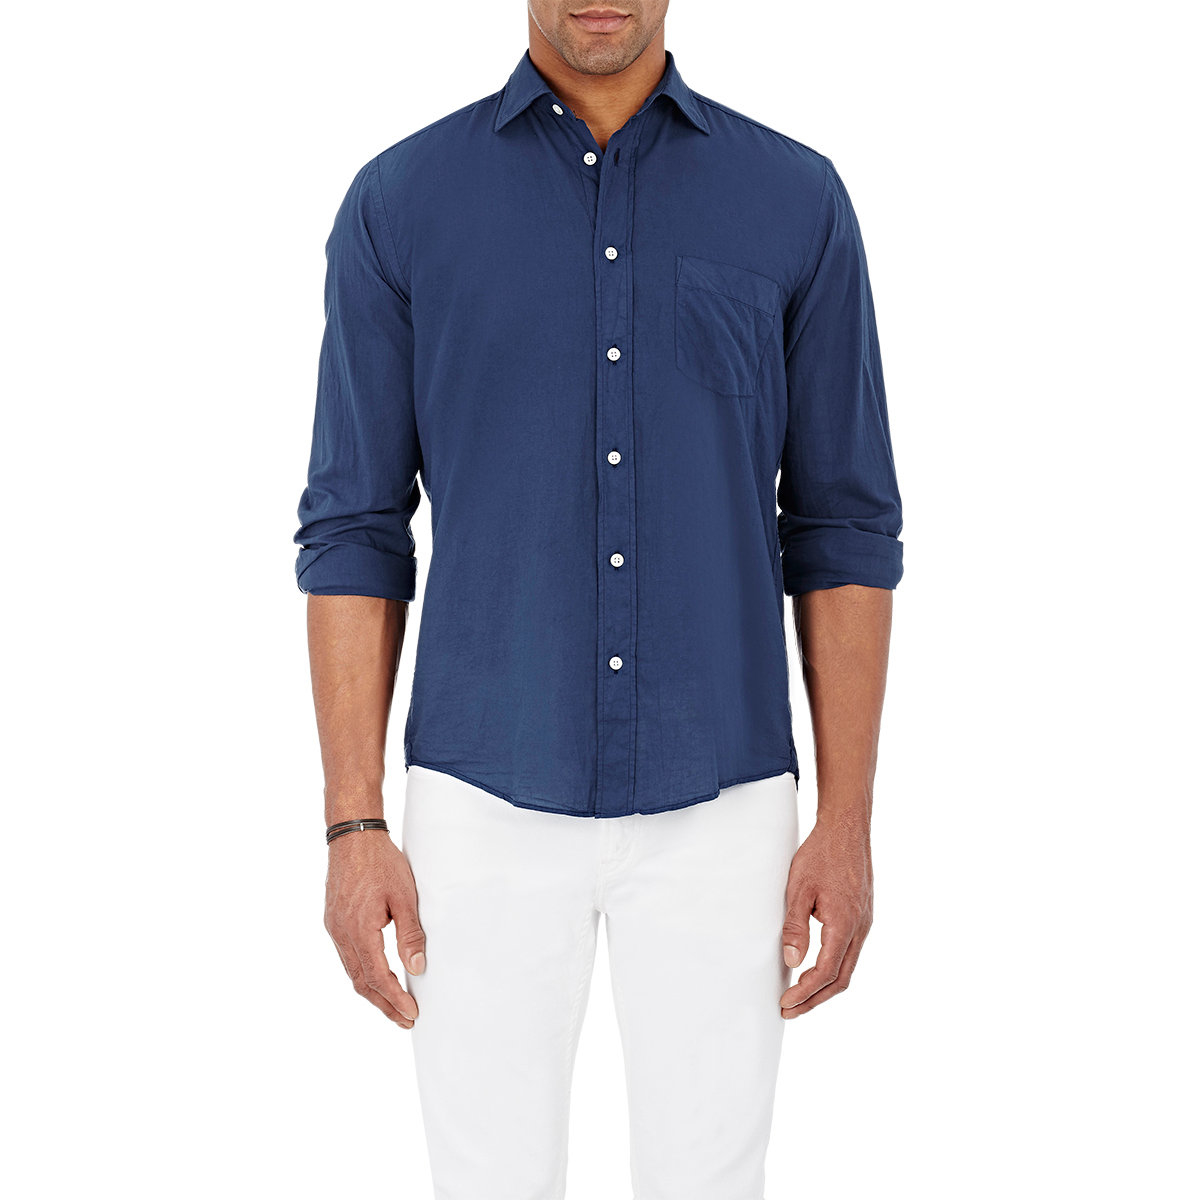 Lyst - Hartford Solid Voile Shirt in Blue for Men